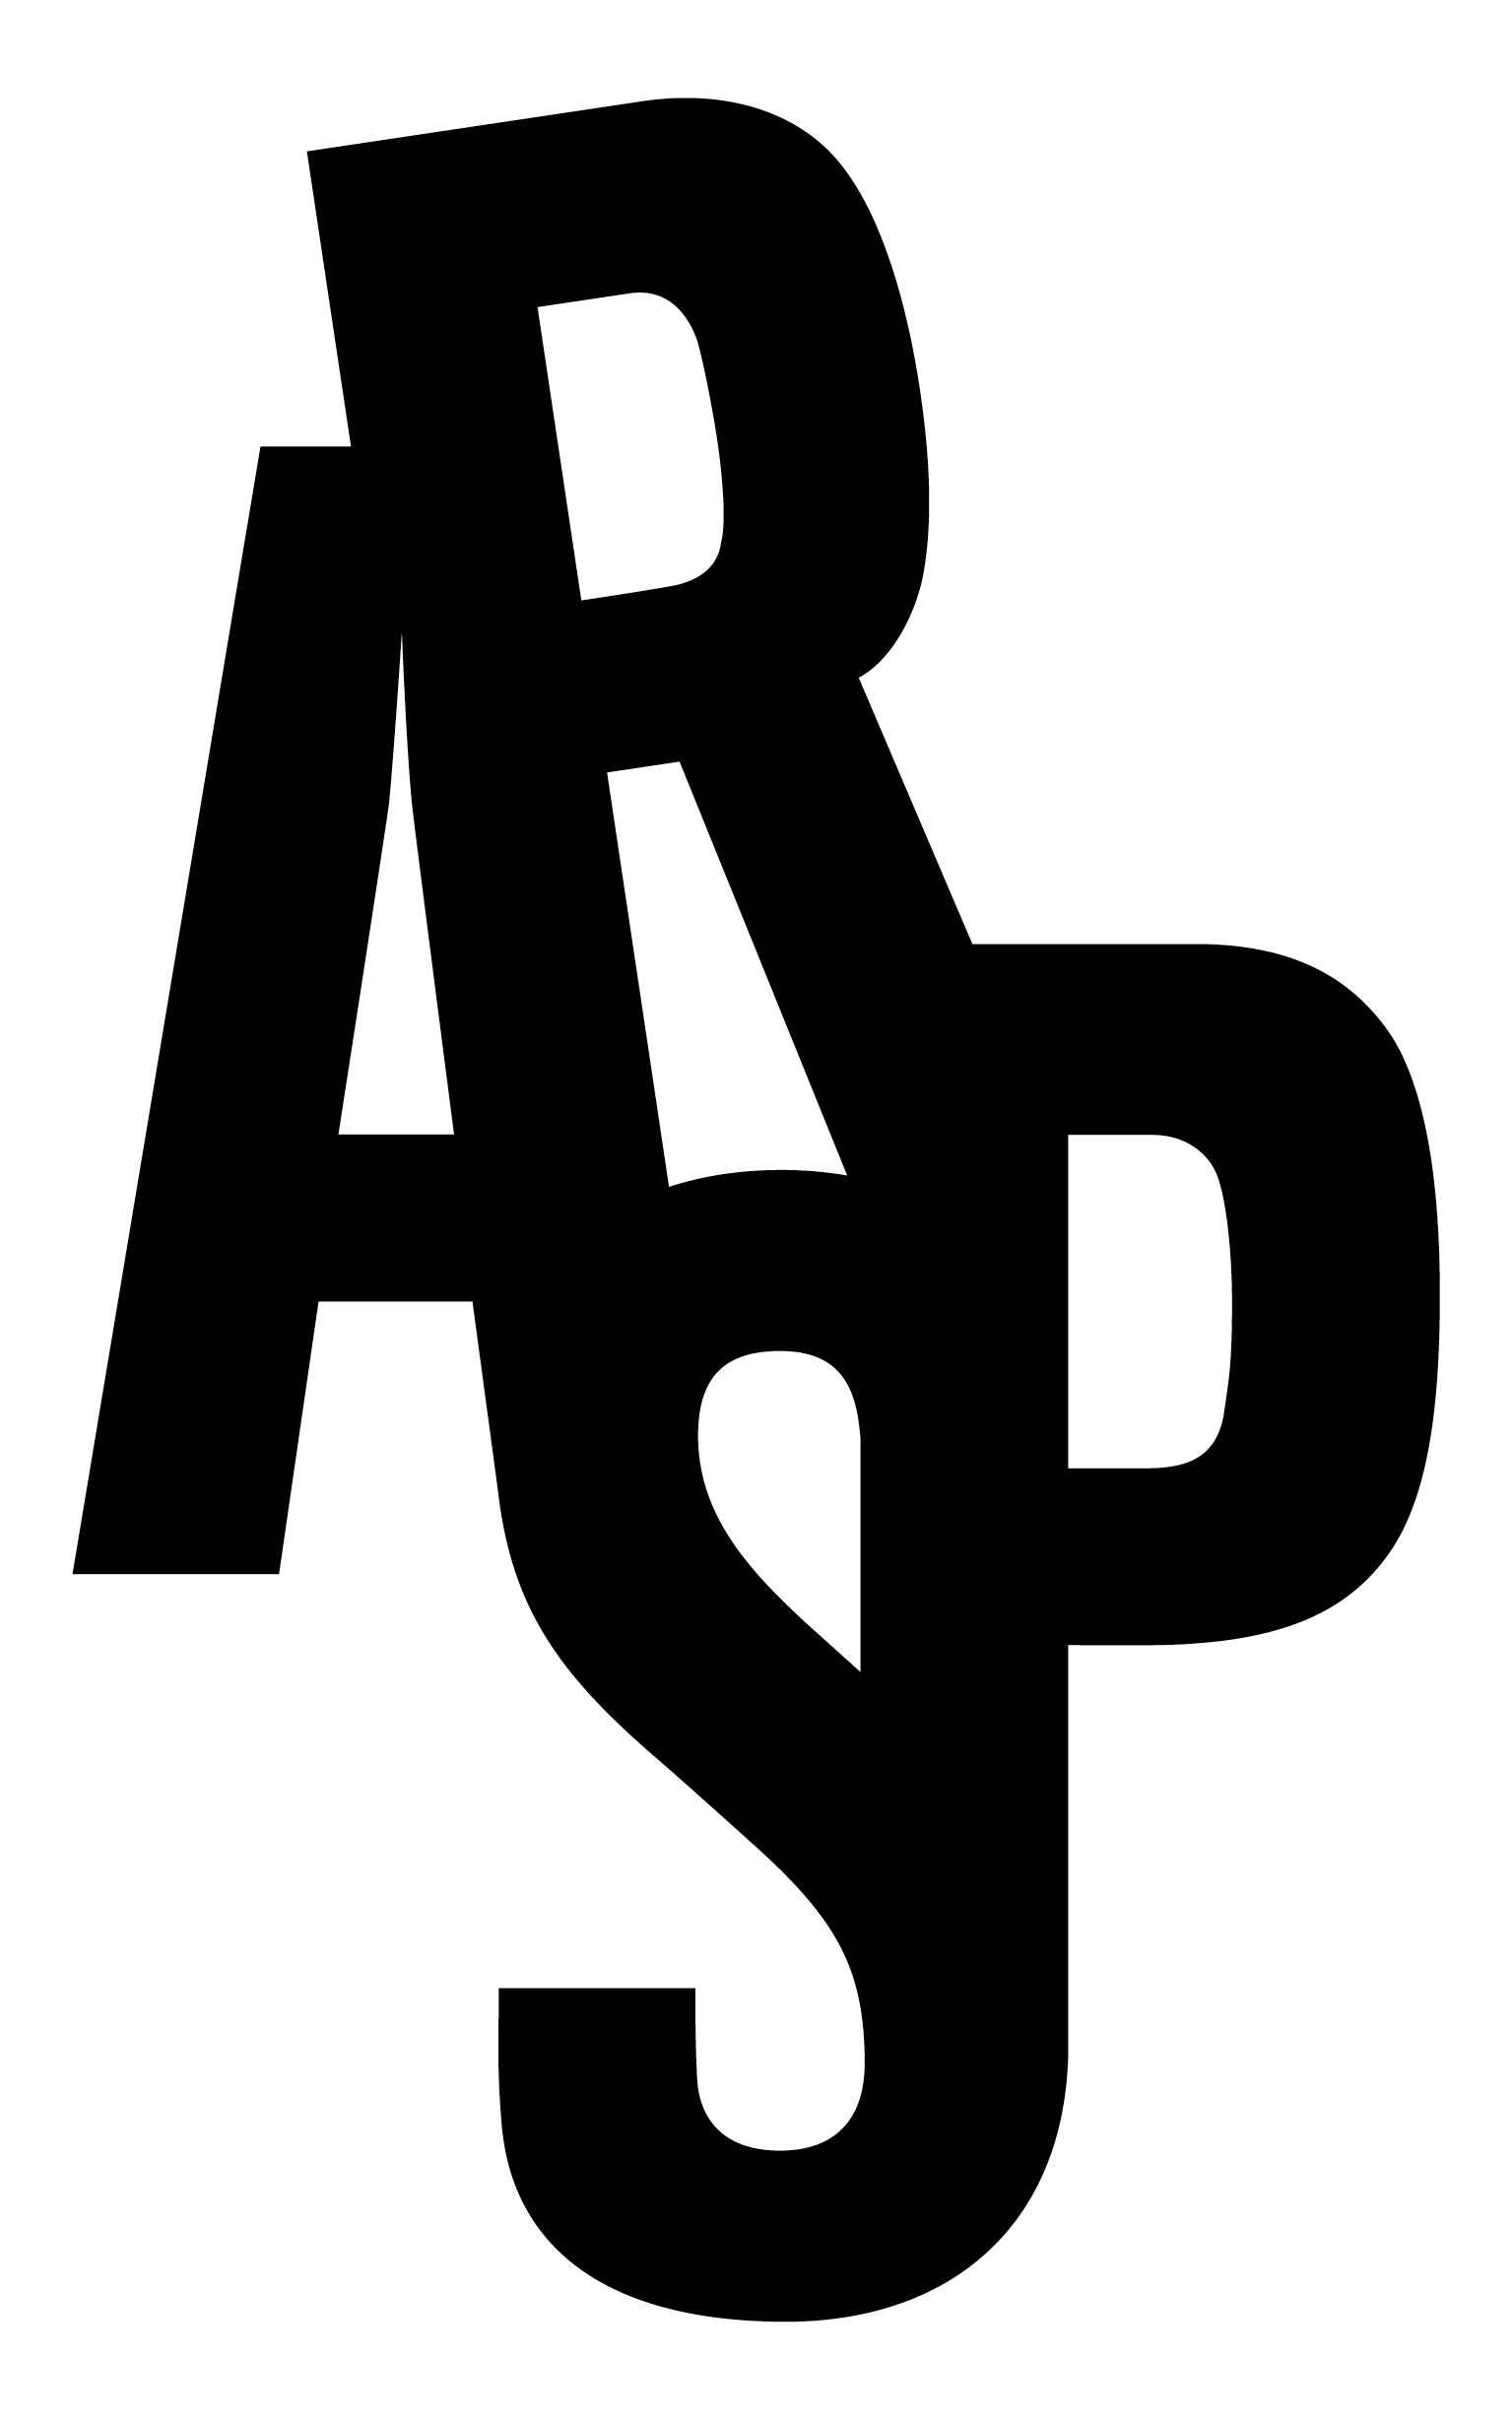 ARSP Architekten